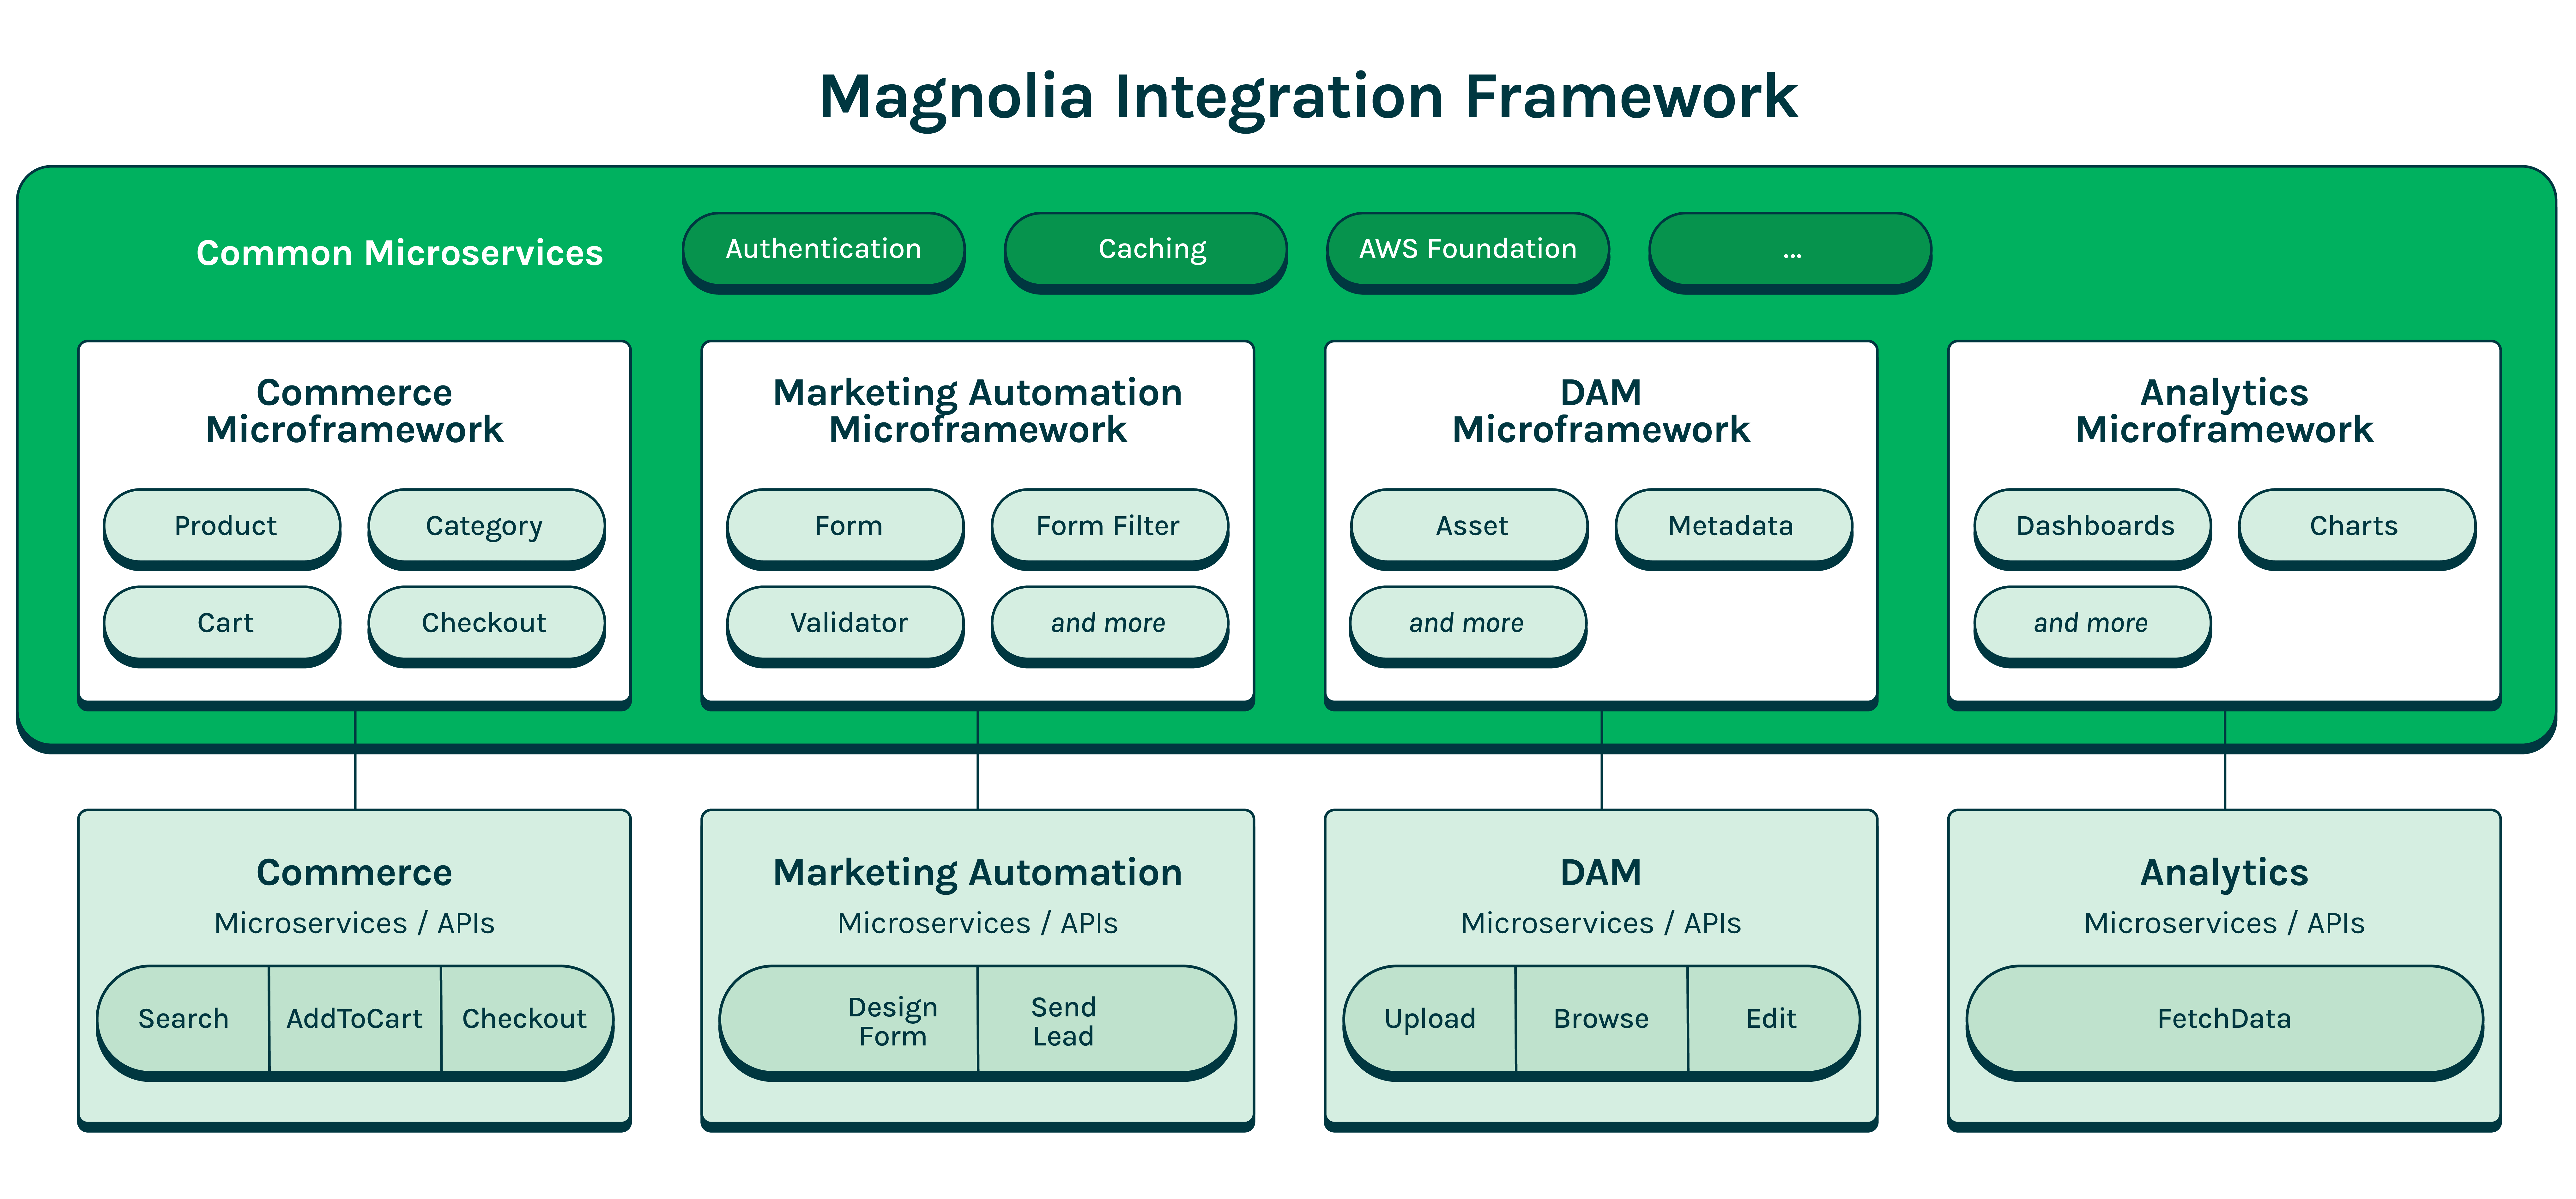 Magnolia Integration Framework_update